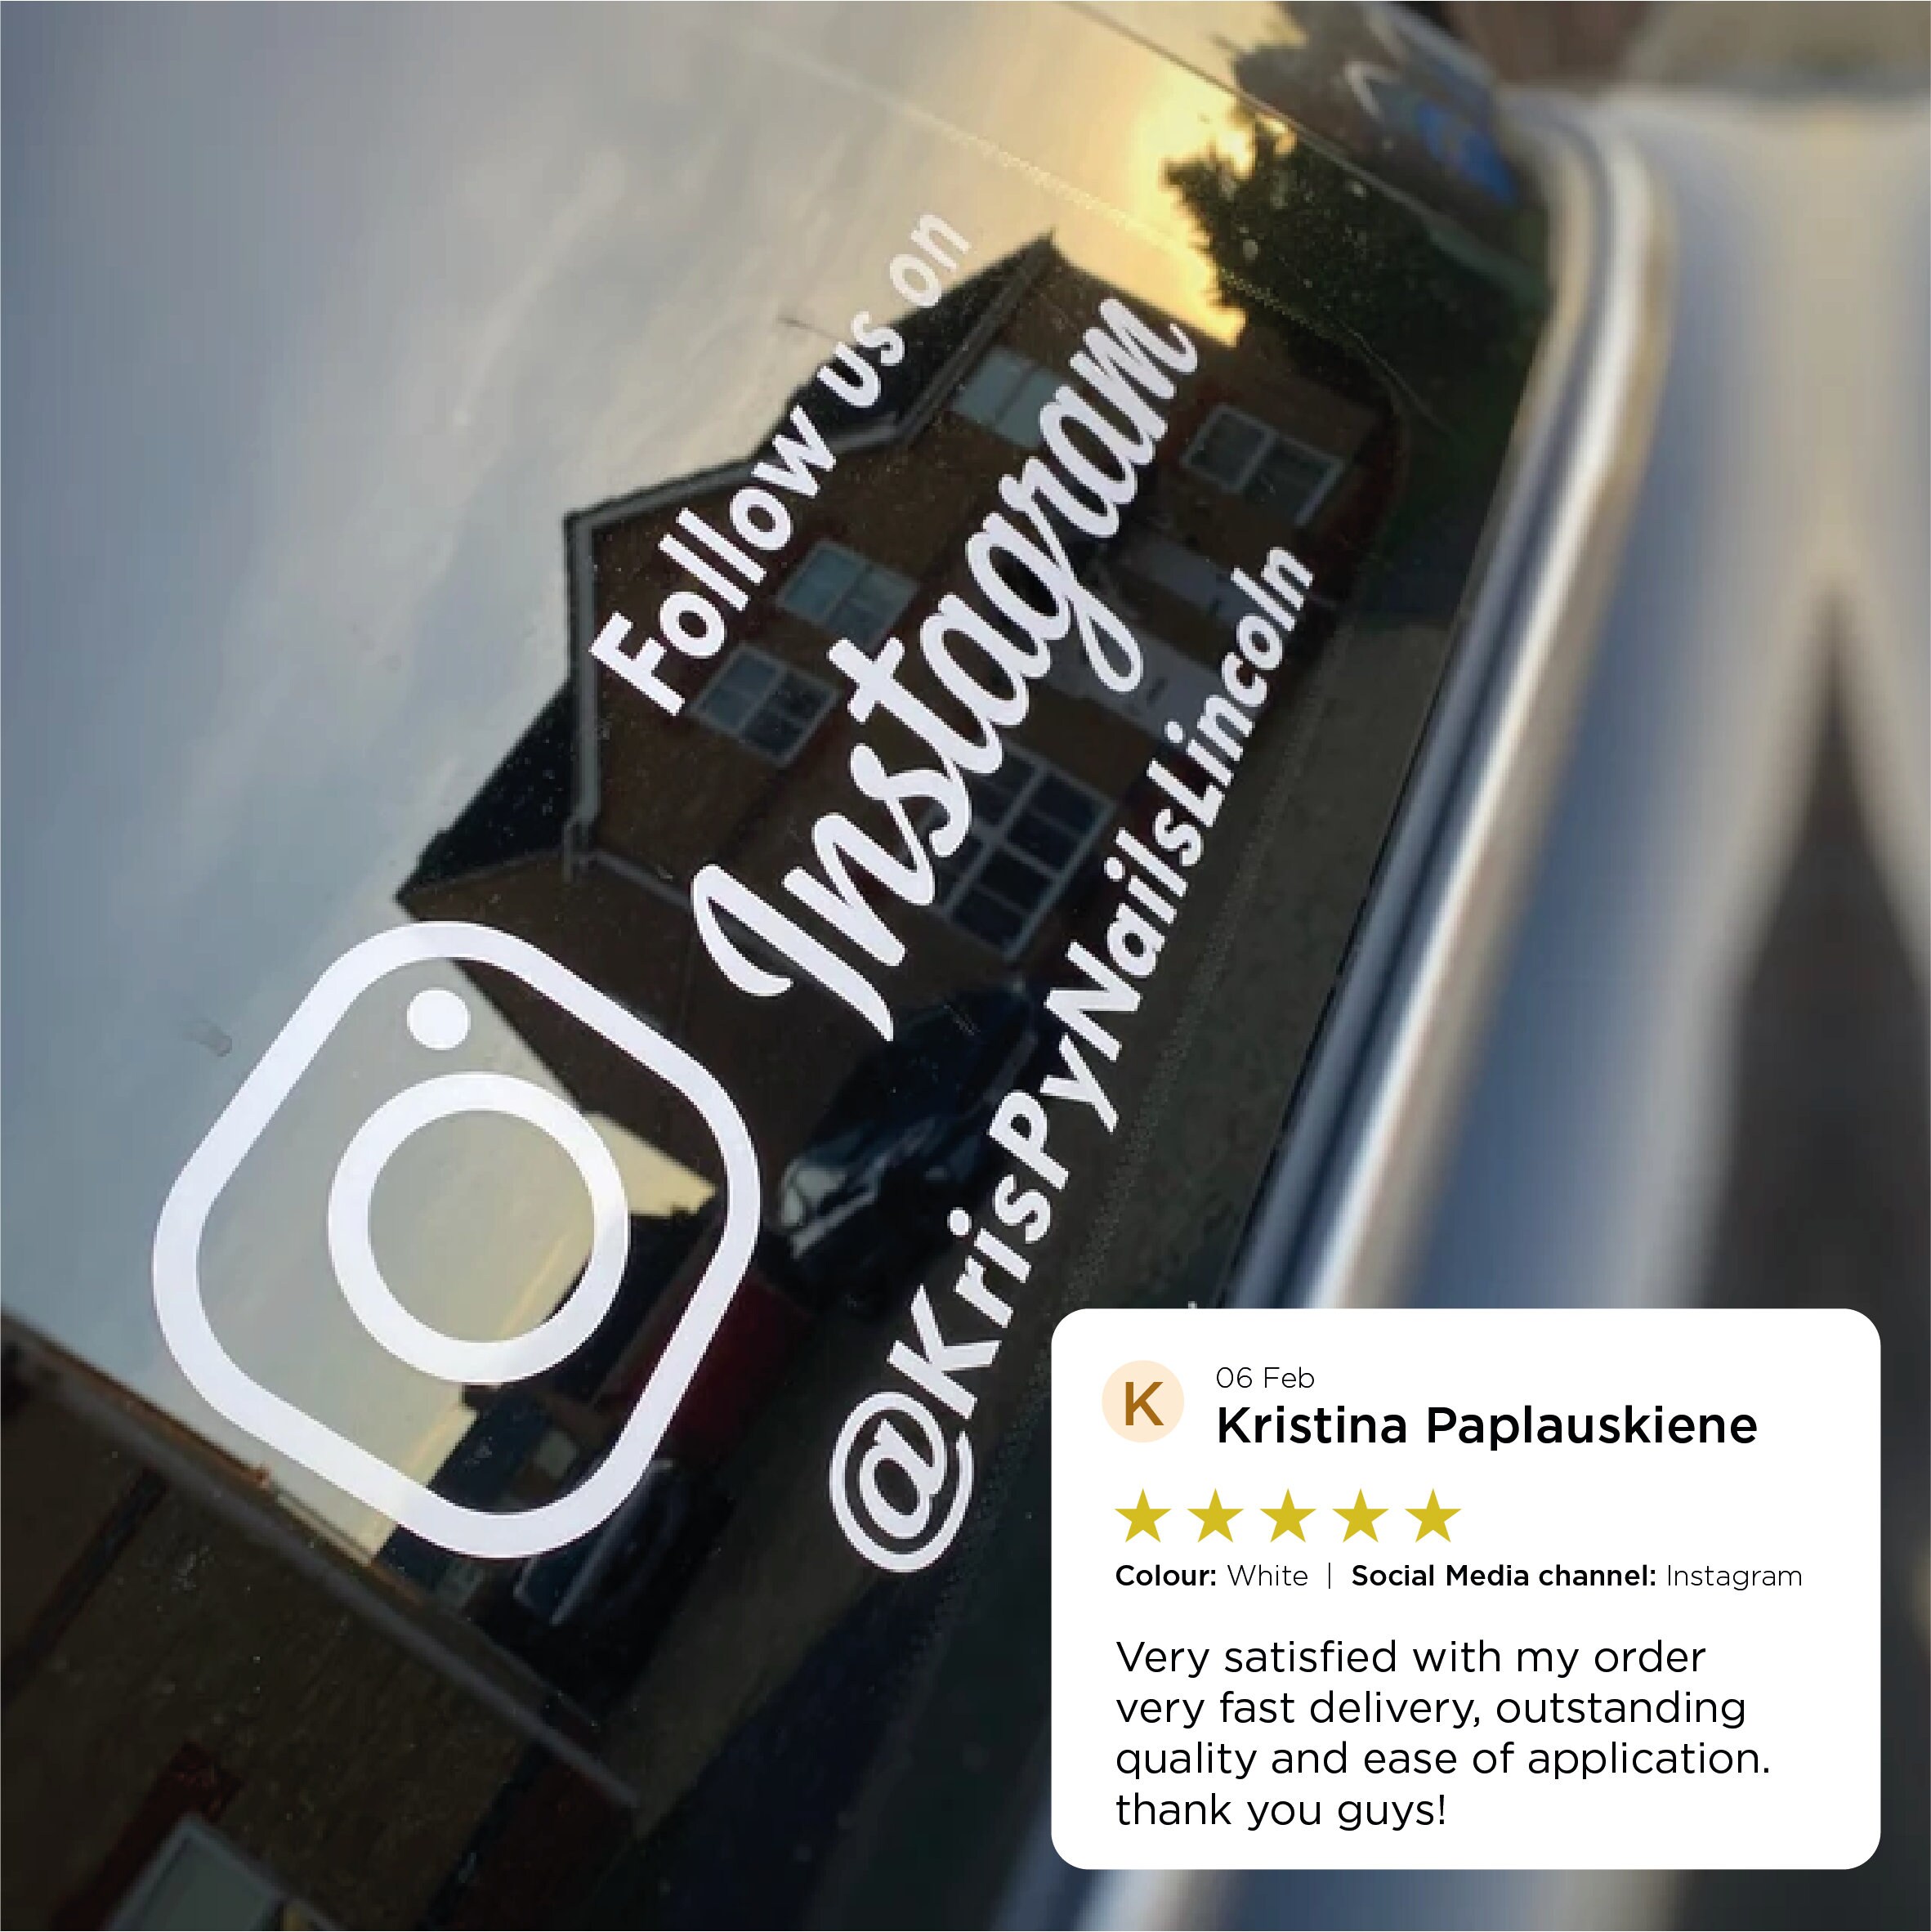 Follow us on Instagram Sticker Clean